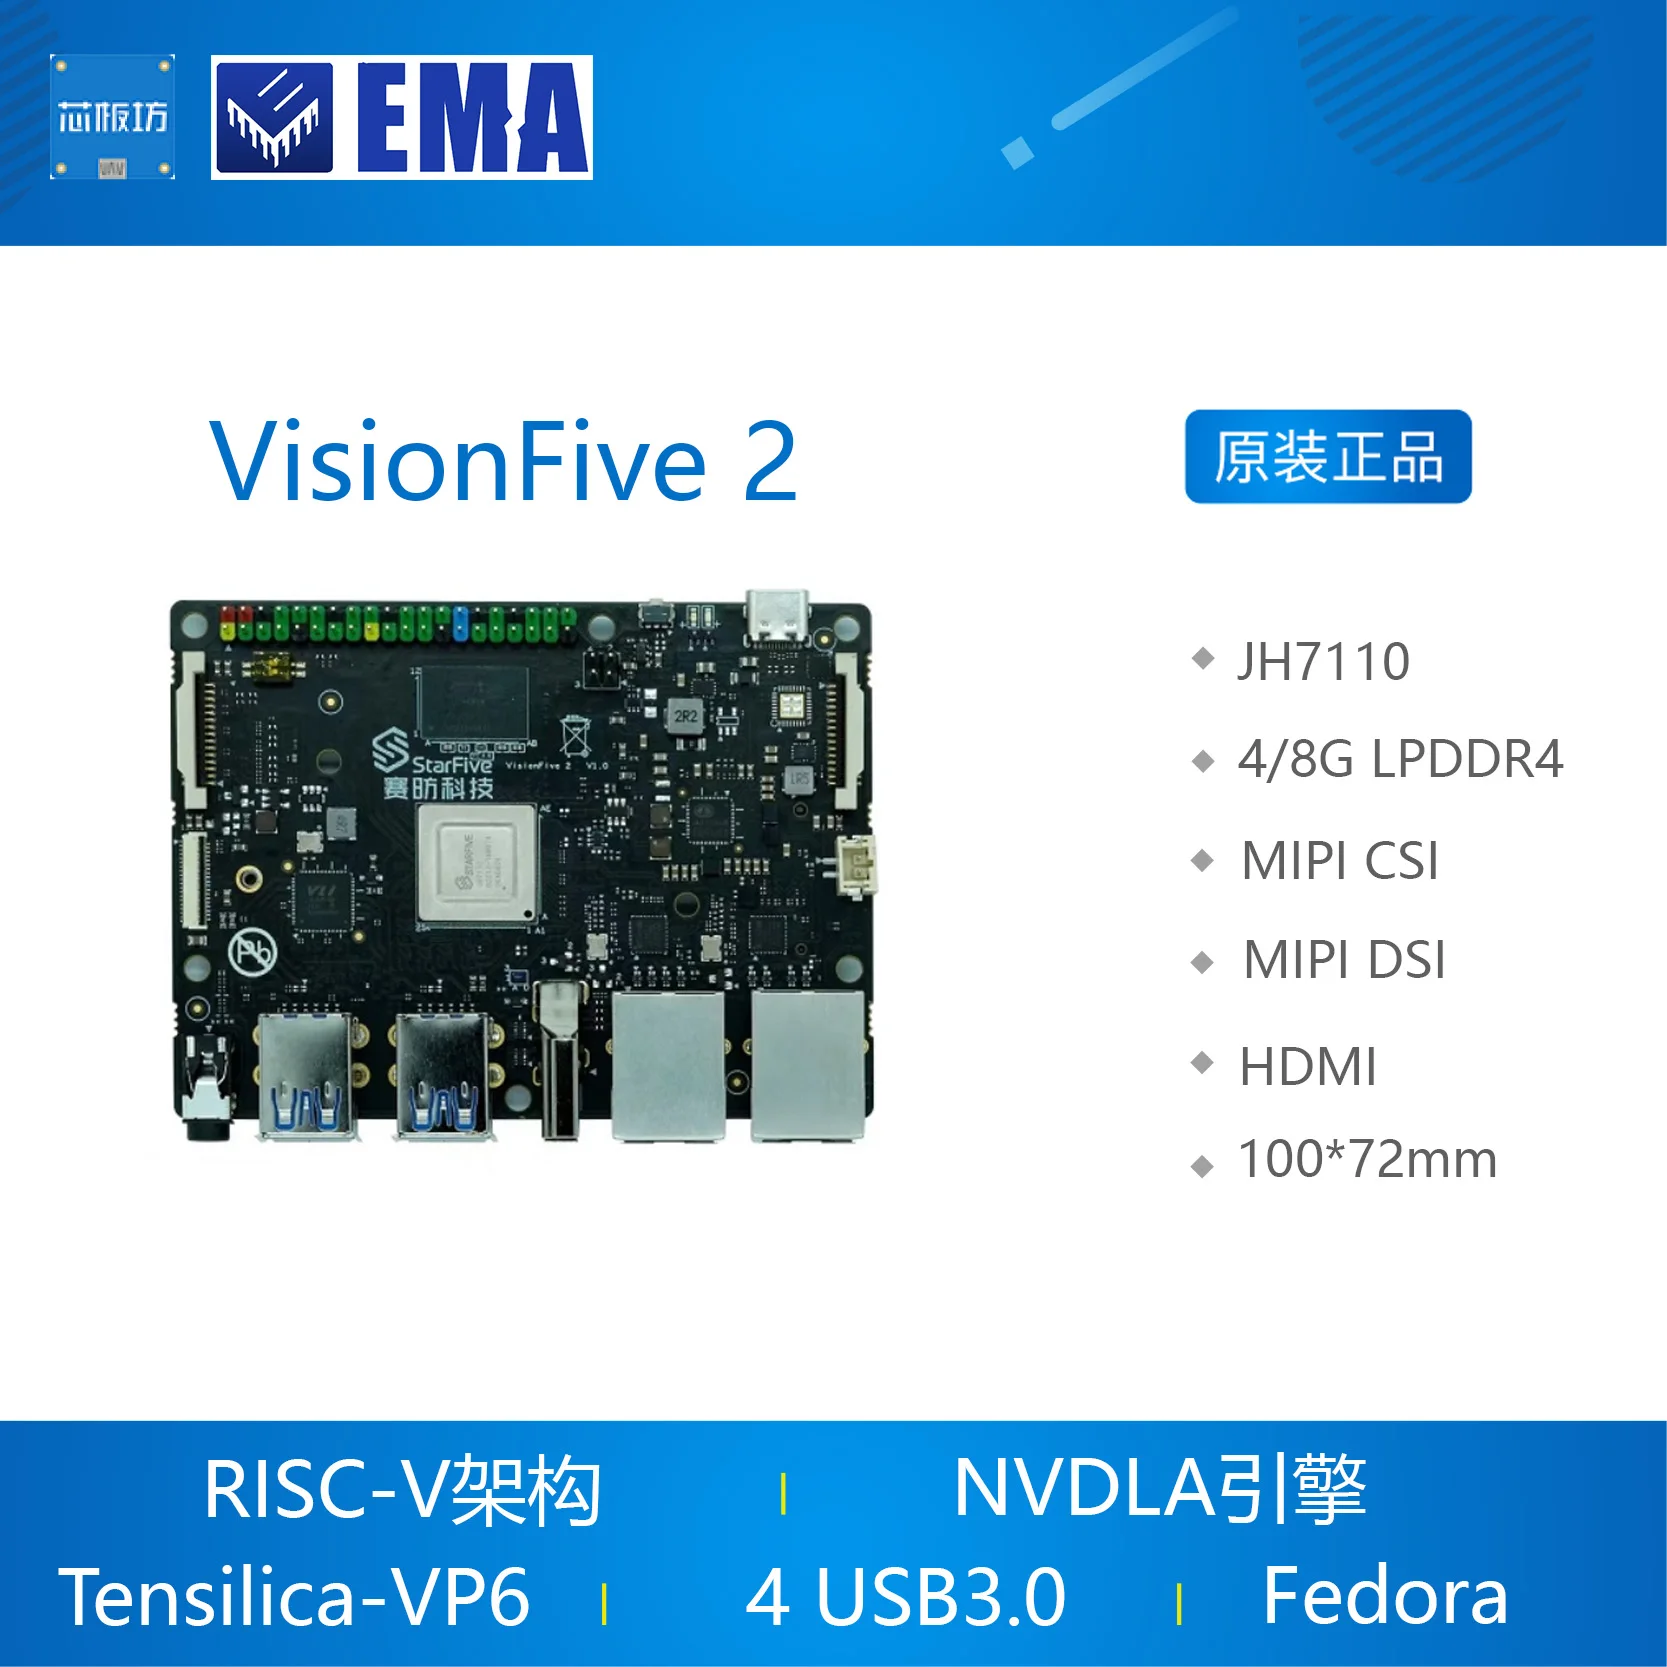 

VisionFive 2 Development Board RISC-V StarFive Single Board Computer Sai Fang ZH7110